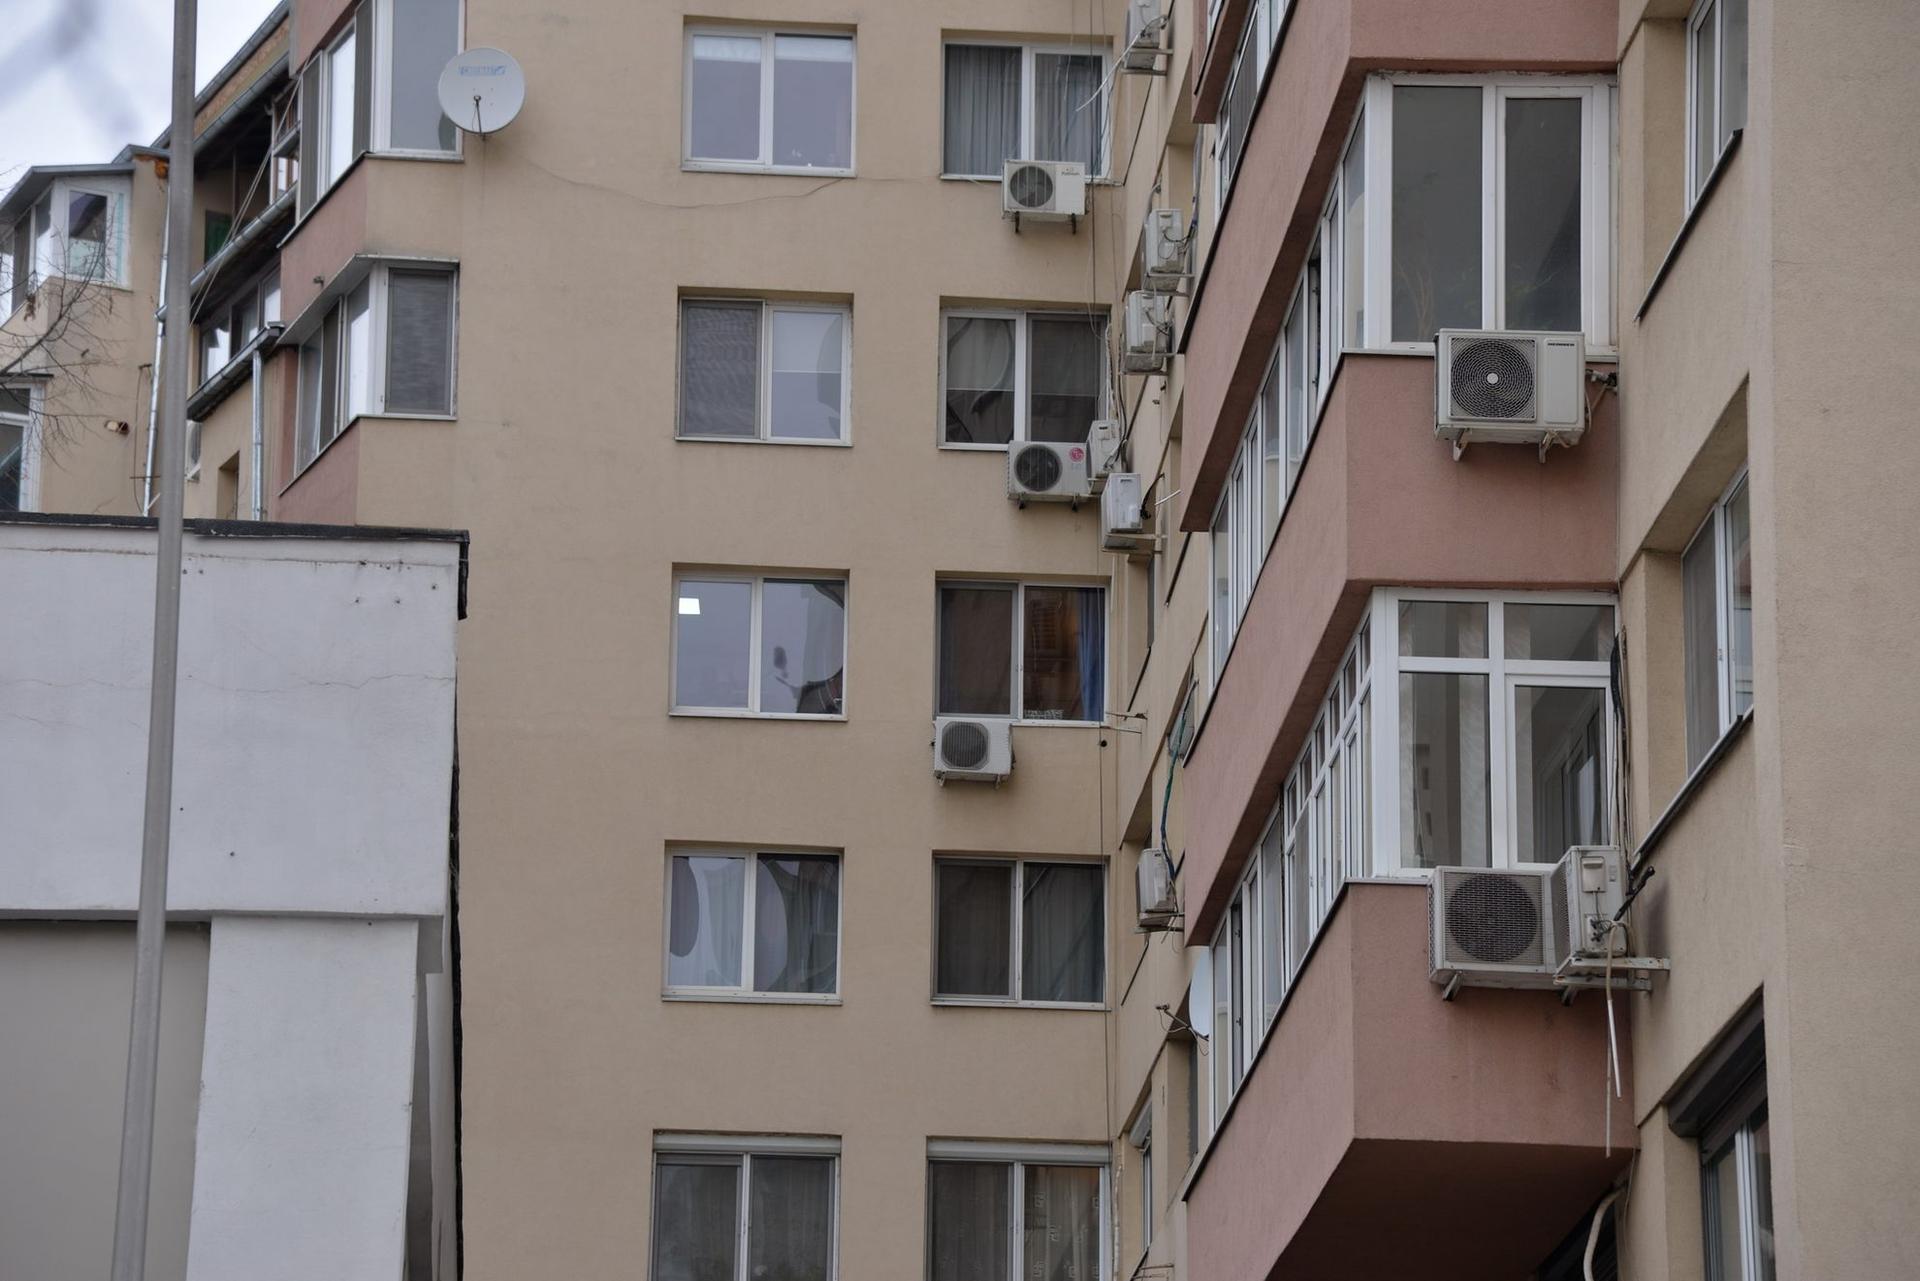 Aparate de aer condiționat montate pe fațada blocurilor din ansamblul arhitectonic din zona Sala Palatului, București. Foto Lucian Muntean